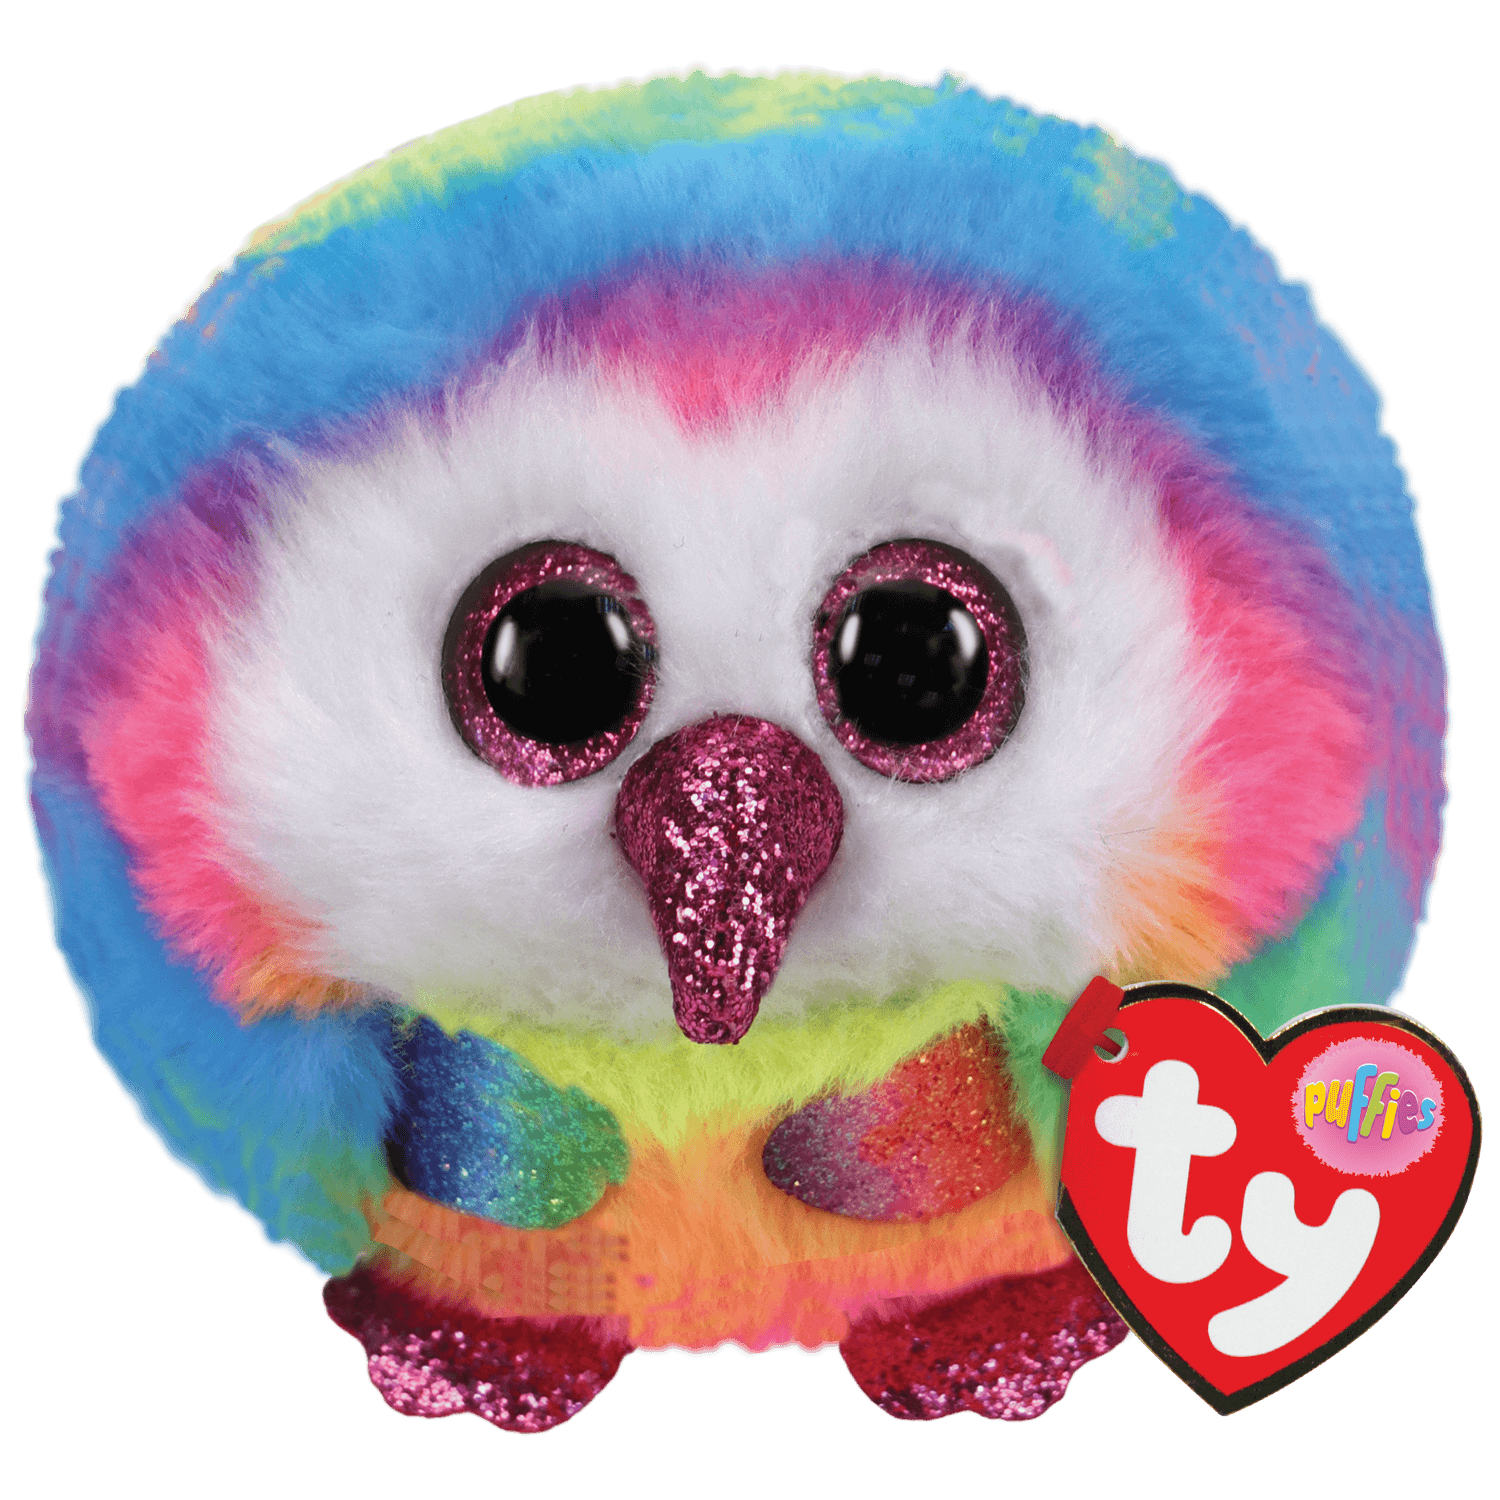 Owen Rainbow Owl | Beanie Boo Puffies